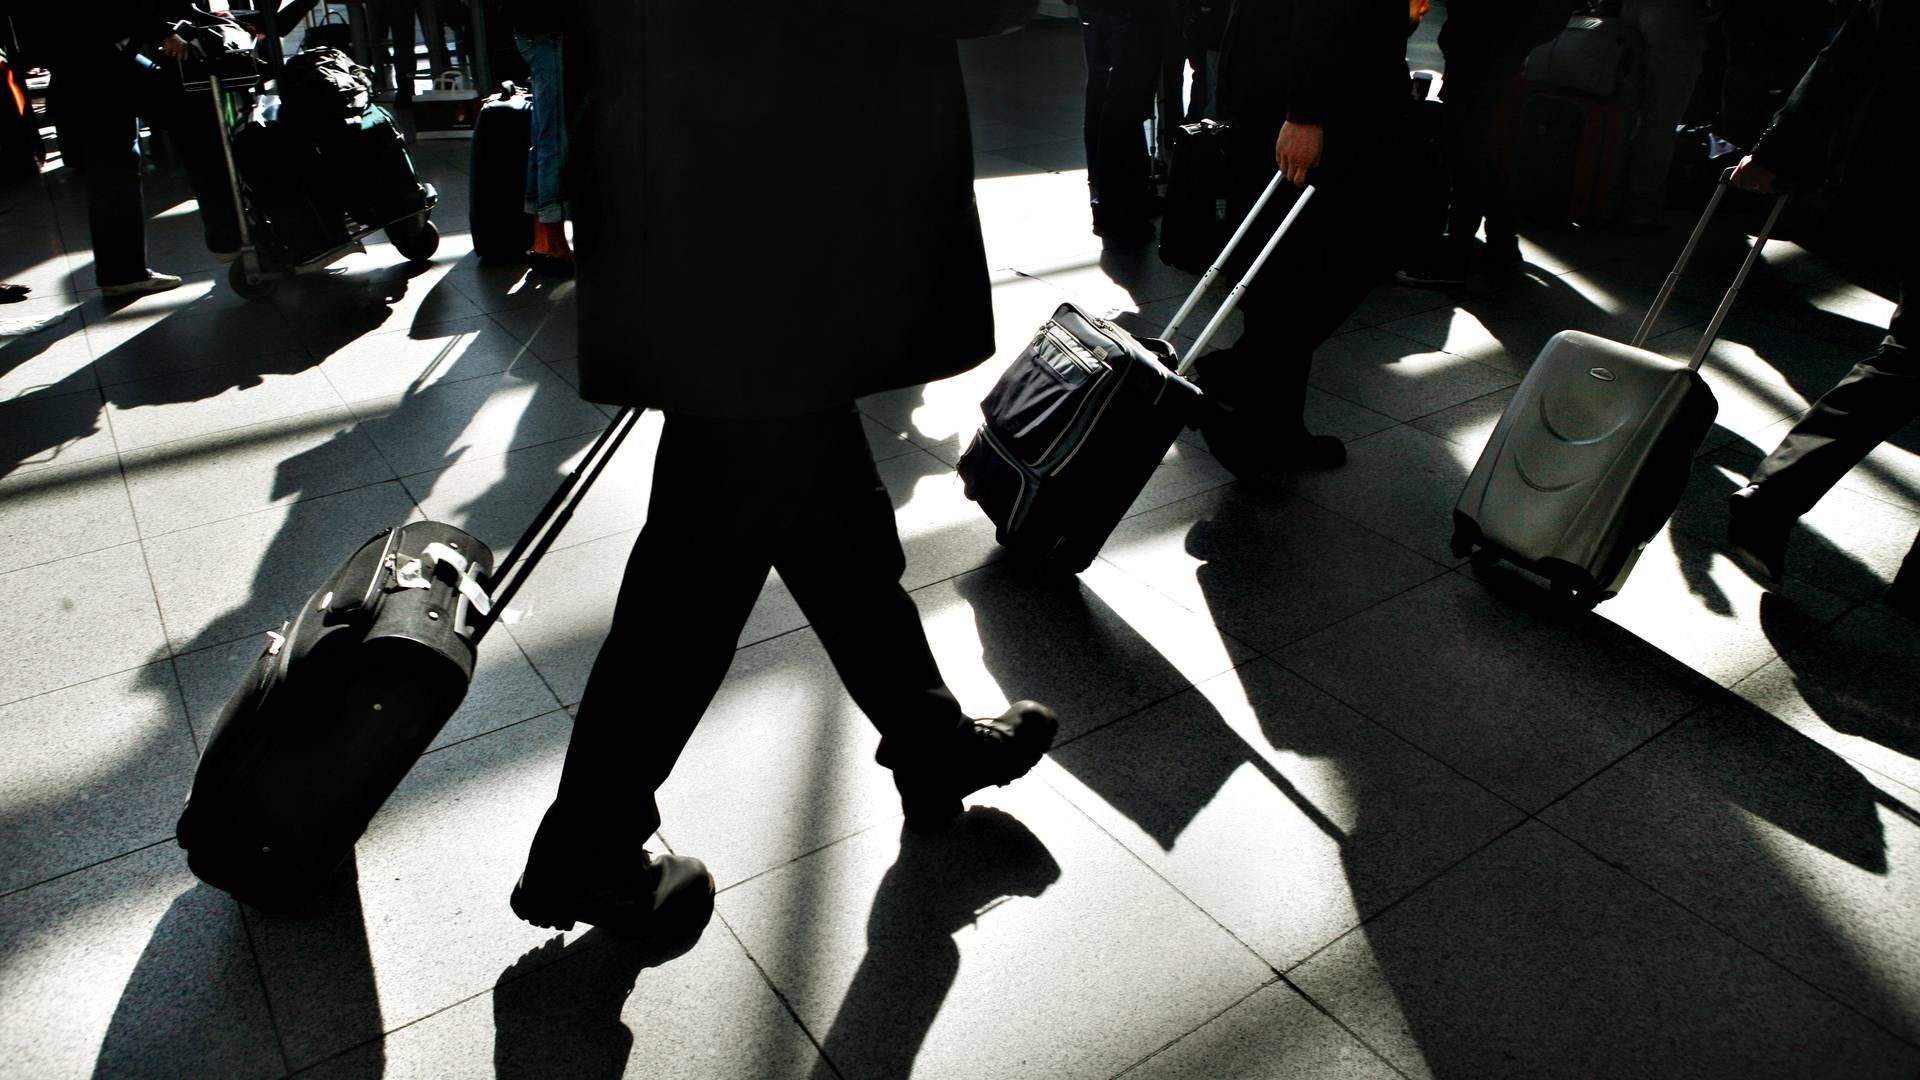 Advokater kan se frem til at bruge mindre tid i lufthavne fremover, viser rundspørge blandt store advokatfirmaer. | Foto: Thomas Borberg